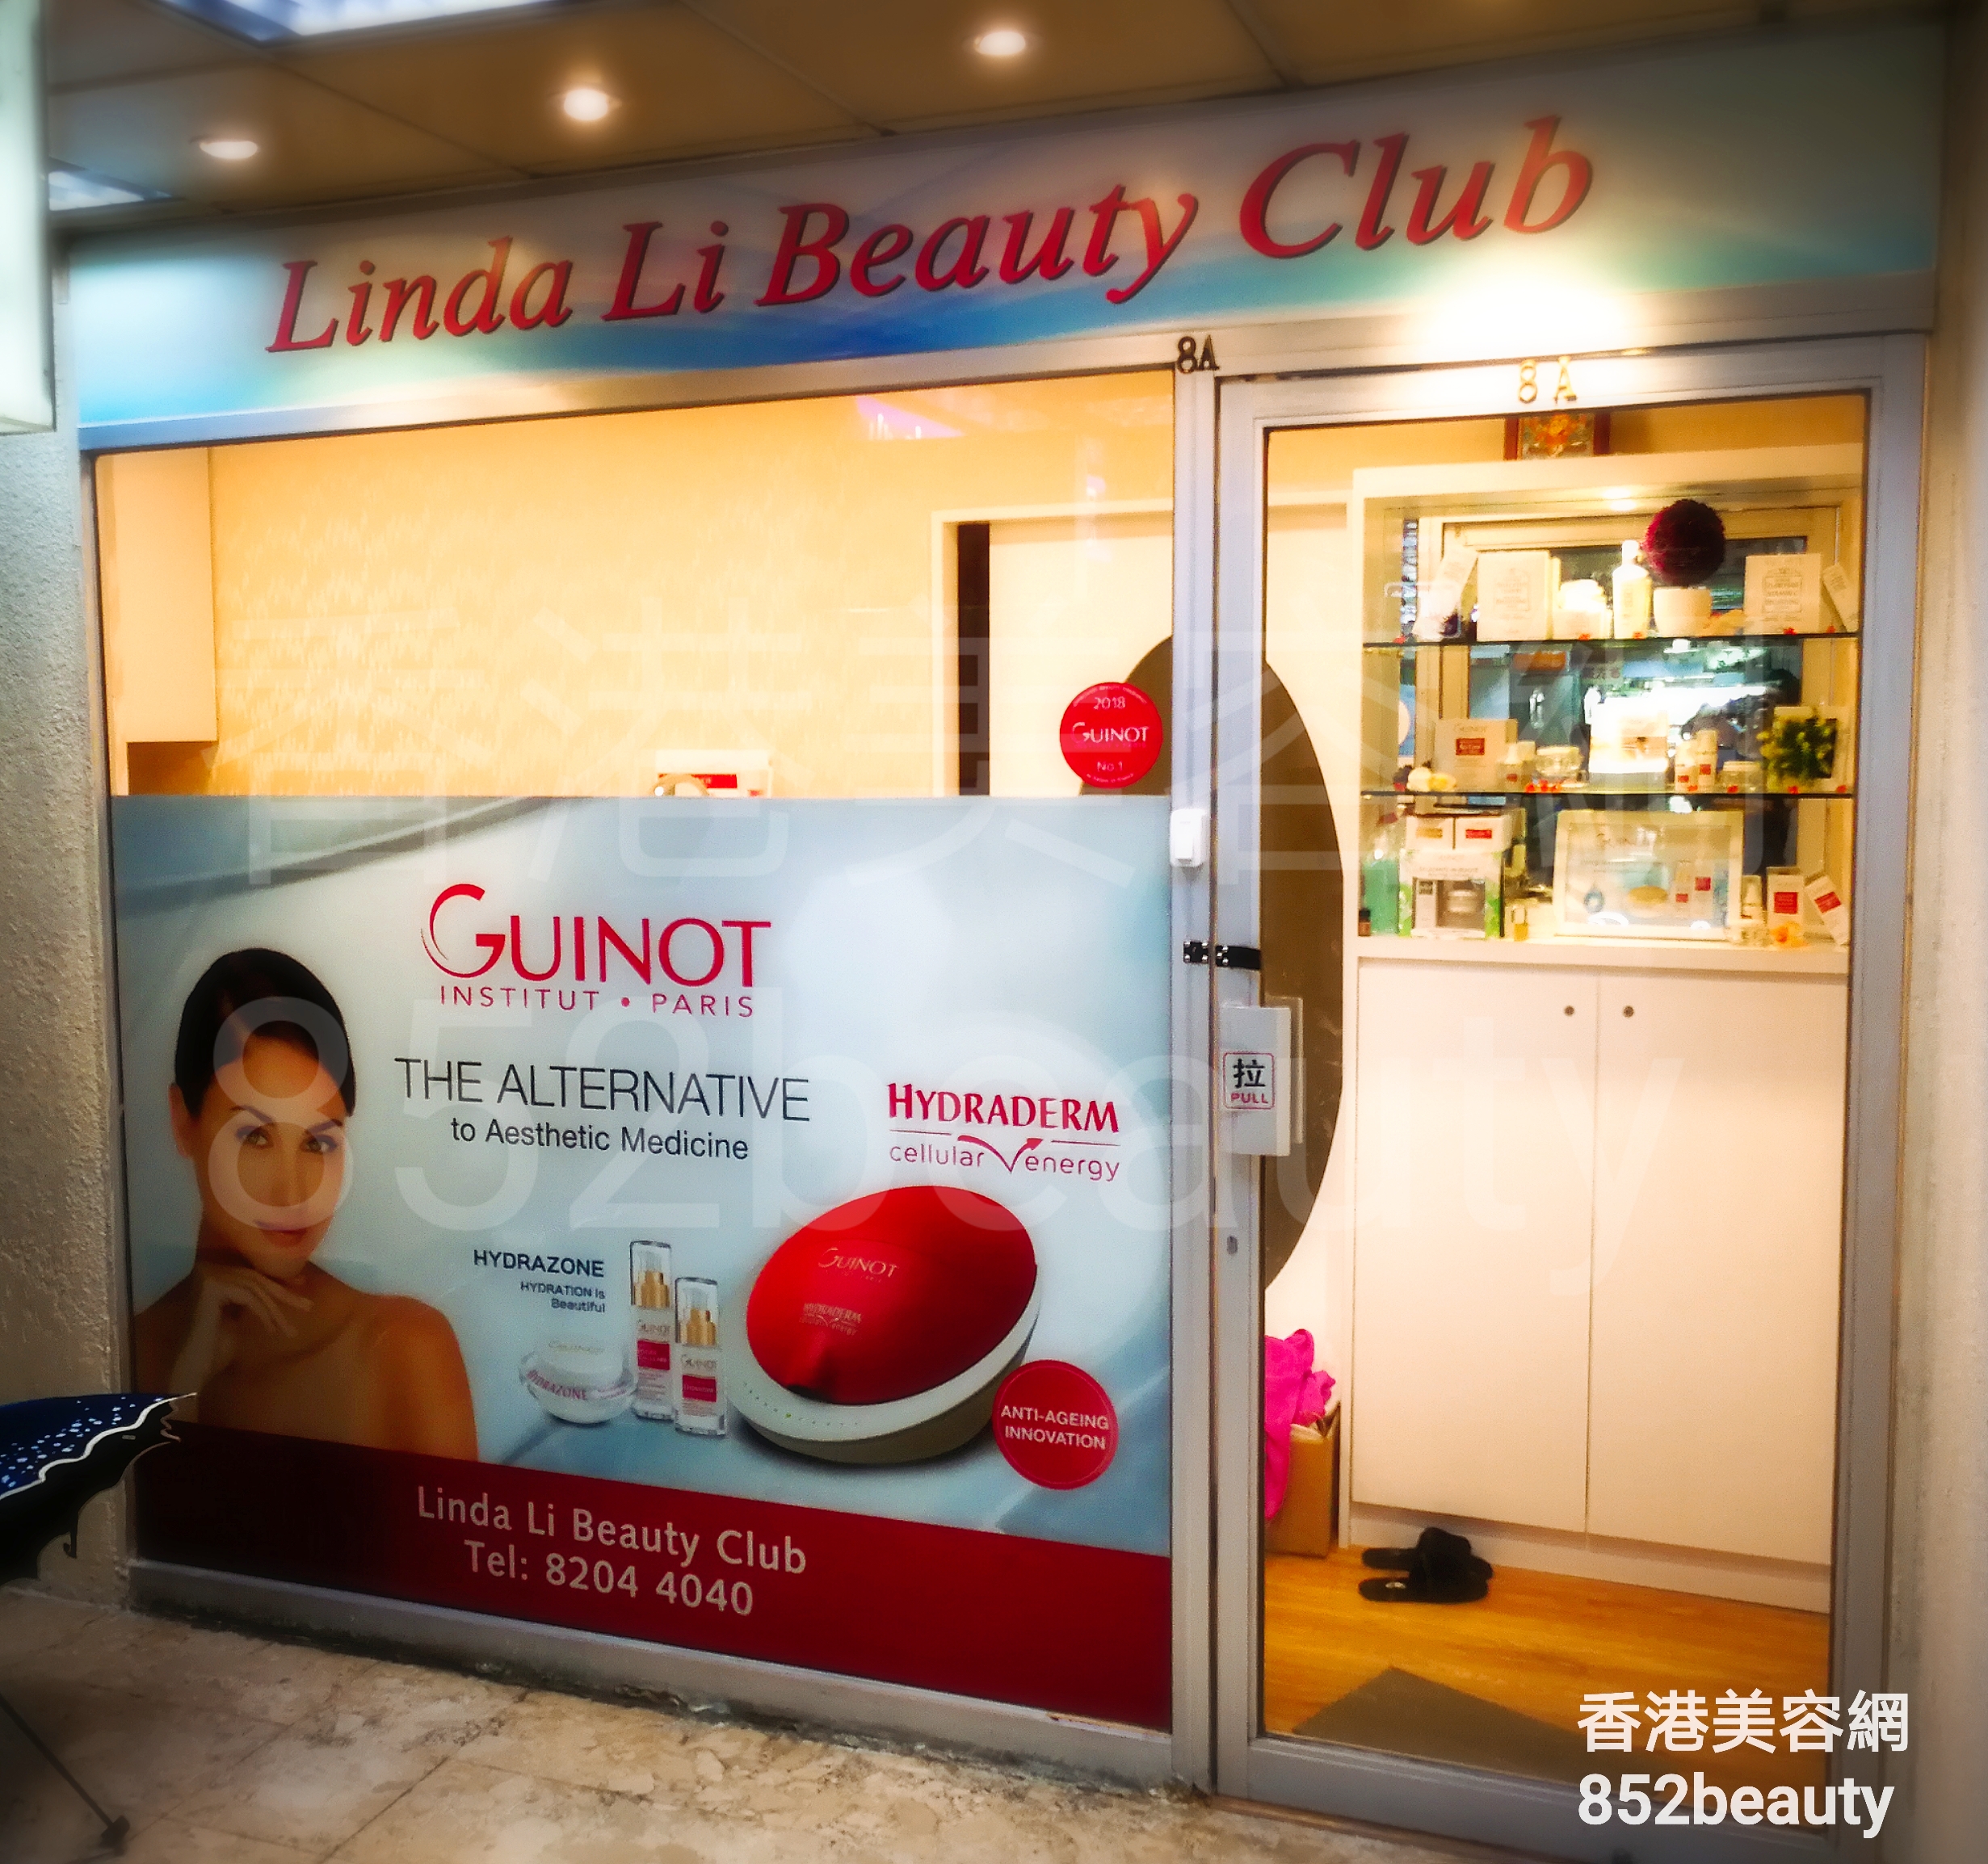 : Linda Li Beauty Club